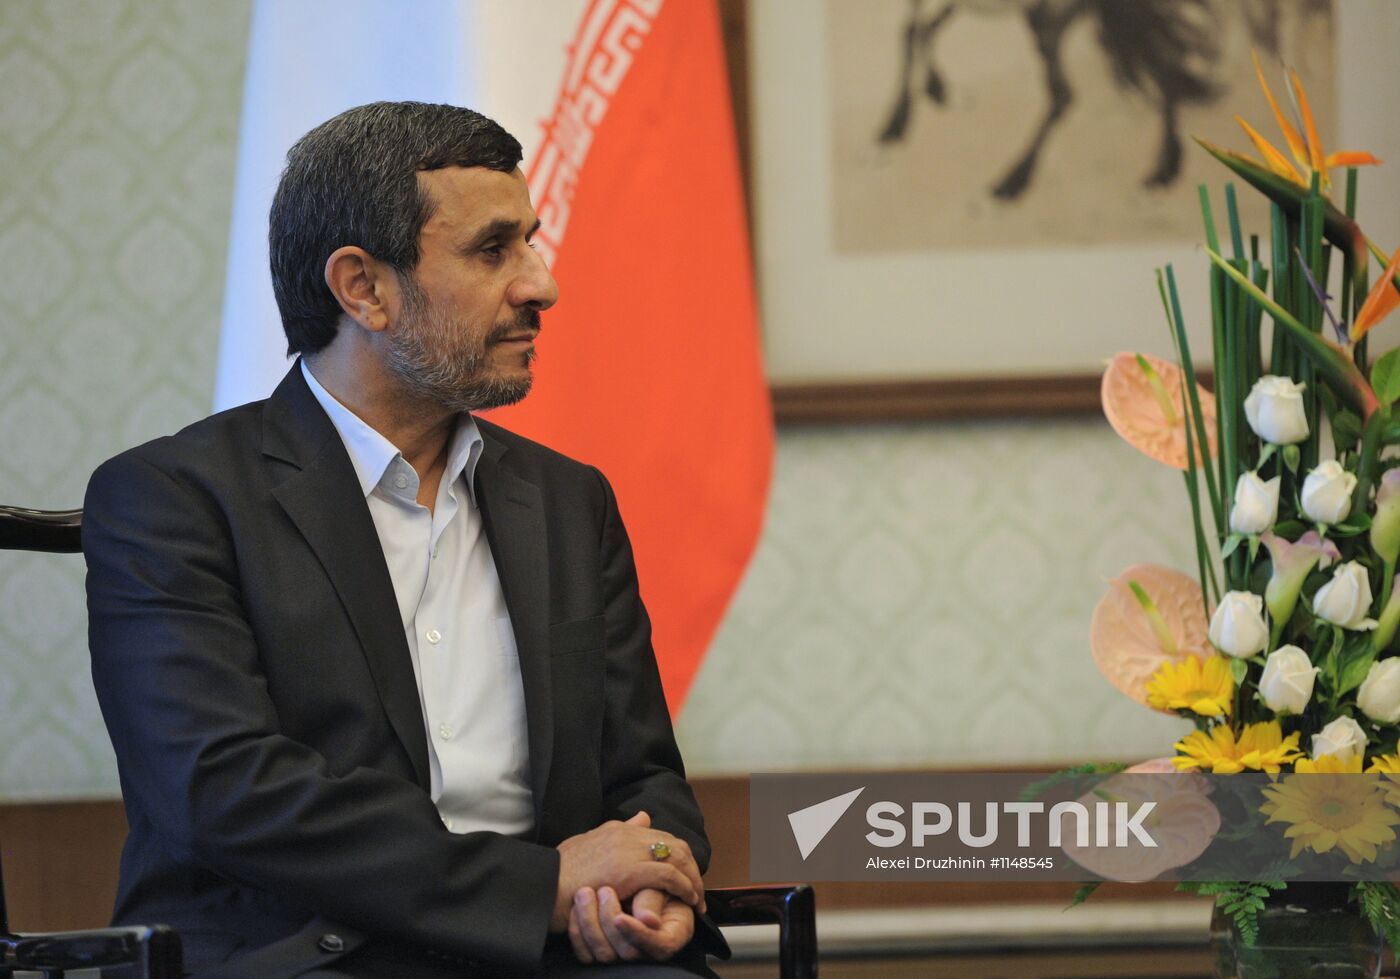 Vladimir Putin talks with Mahmoud Ahmadinejad